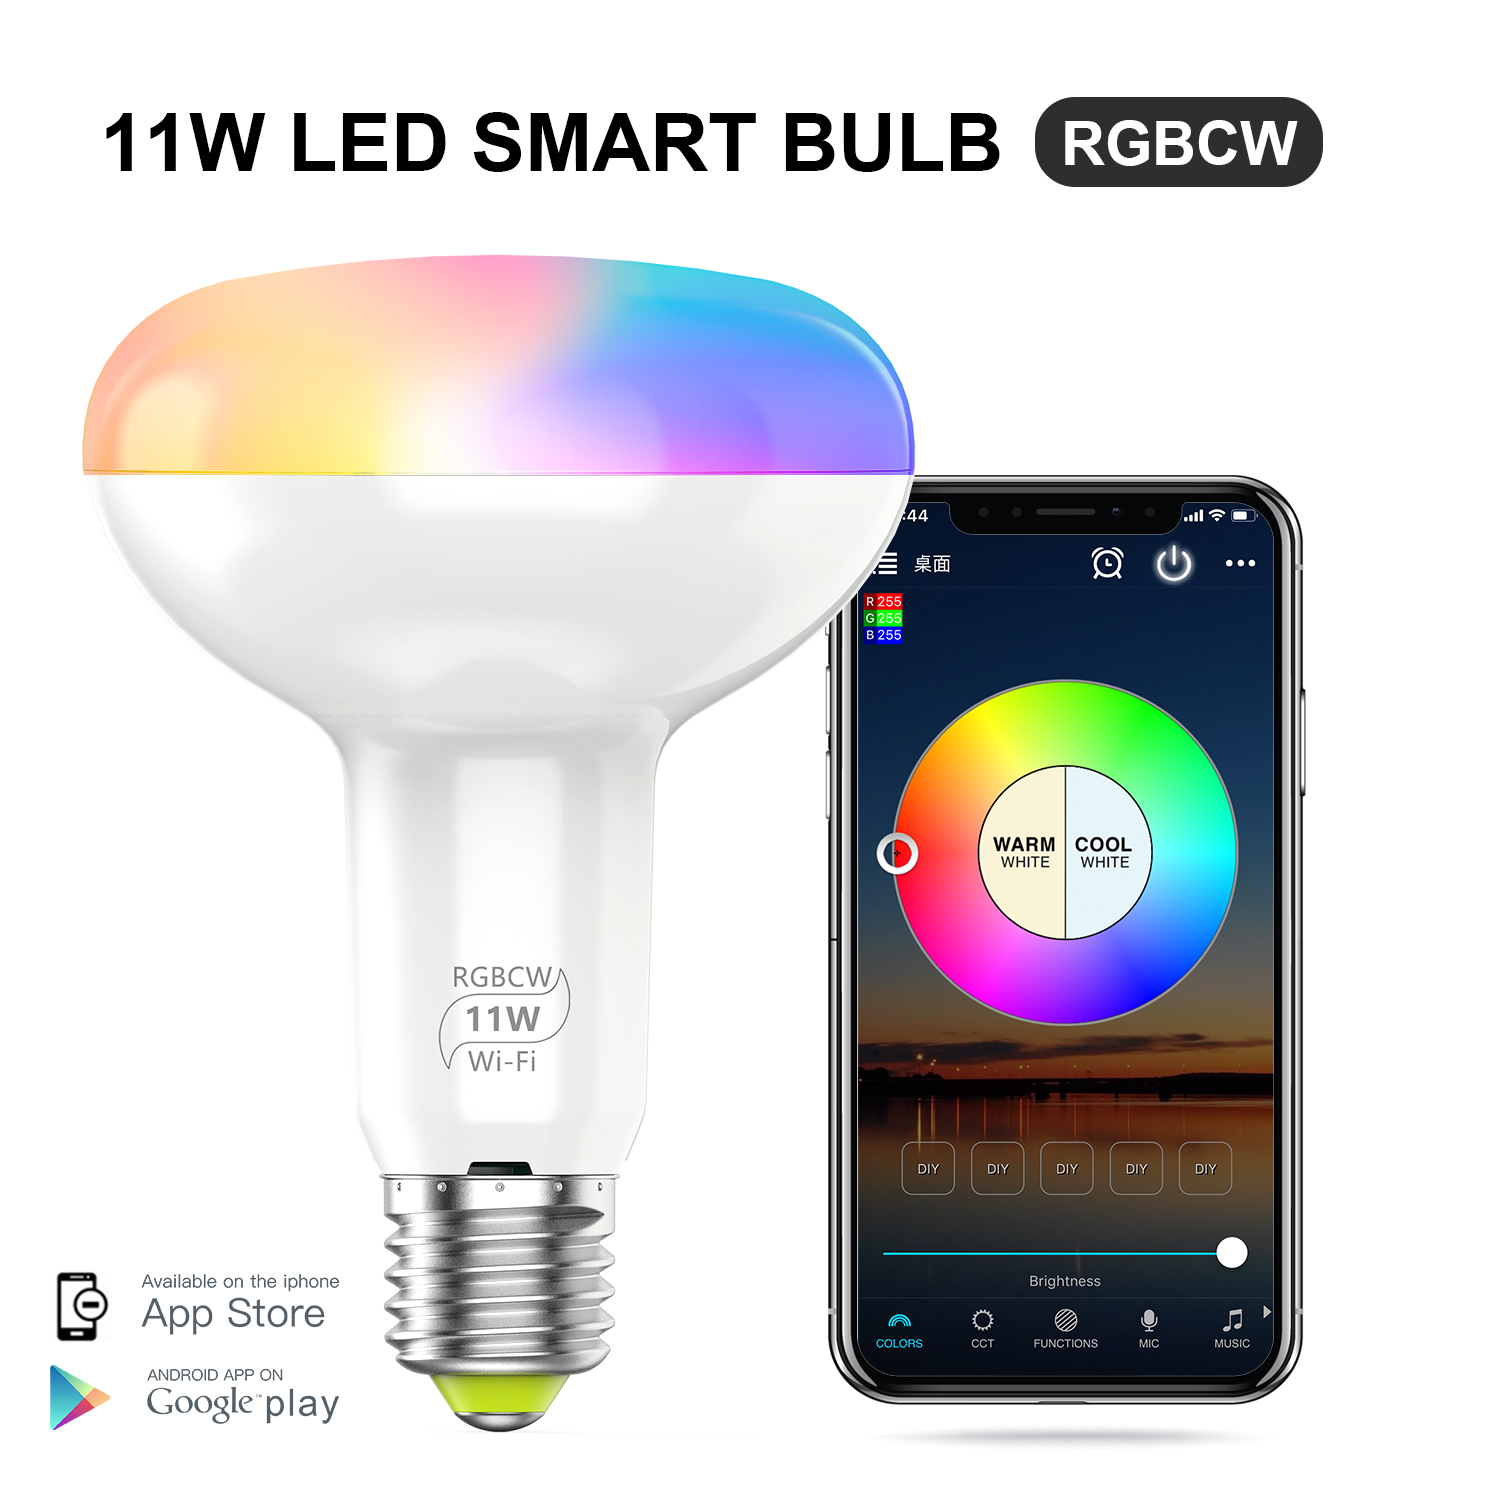 11W smart bulb